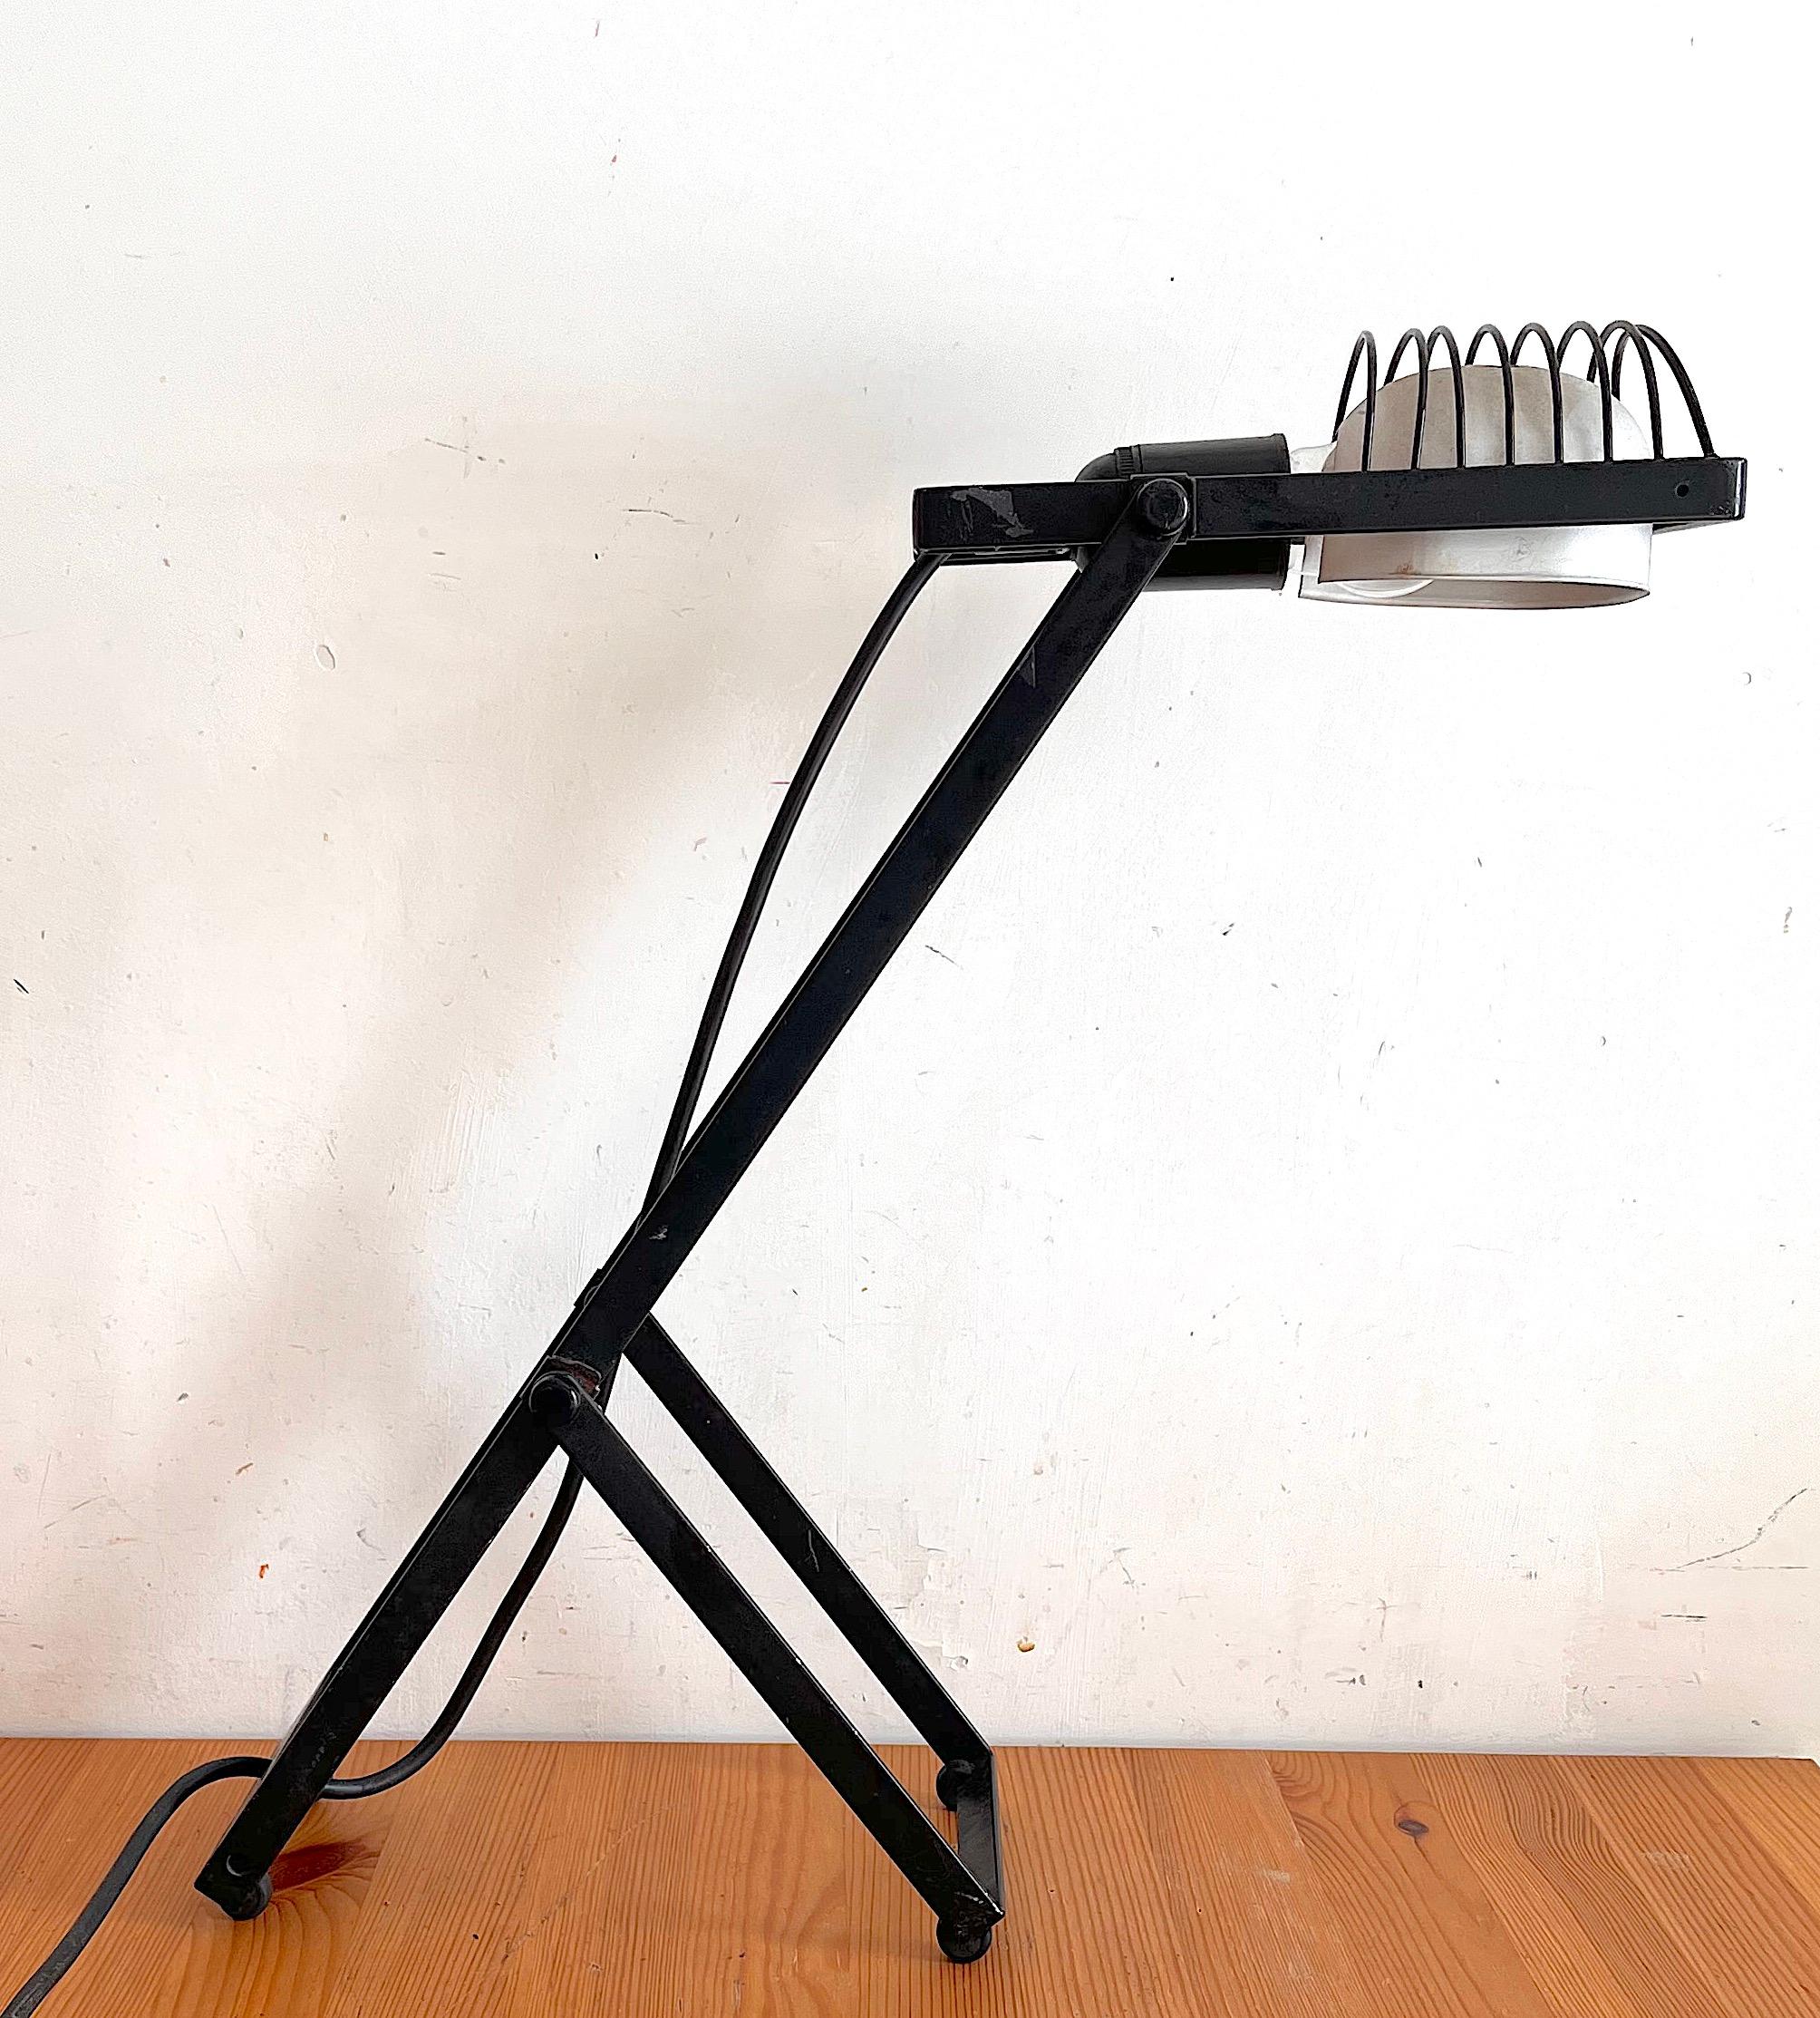 Sintesi-Tischlampen, entworfen von Ernesto Gismondi, dem Gründer des italienischen Leuchtenherstellers Artemide in den 1970er Jahren. Der Ein/Aus-Schalter befindet sich am Kabel. Diese Lampe hat einen Aluminium-Lampenschirm. Der Zustand der Lampen